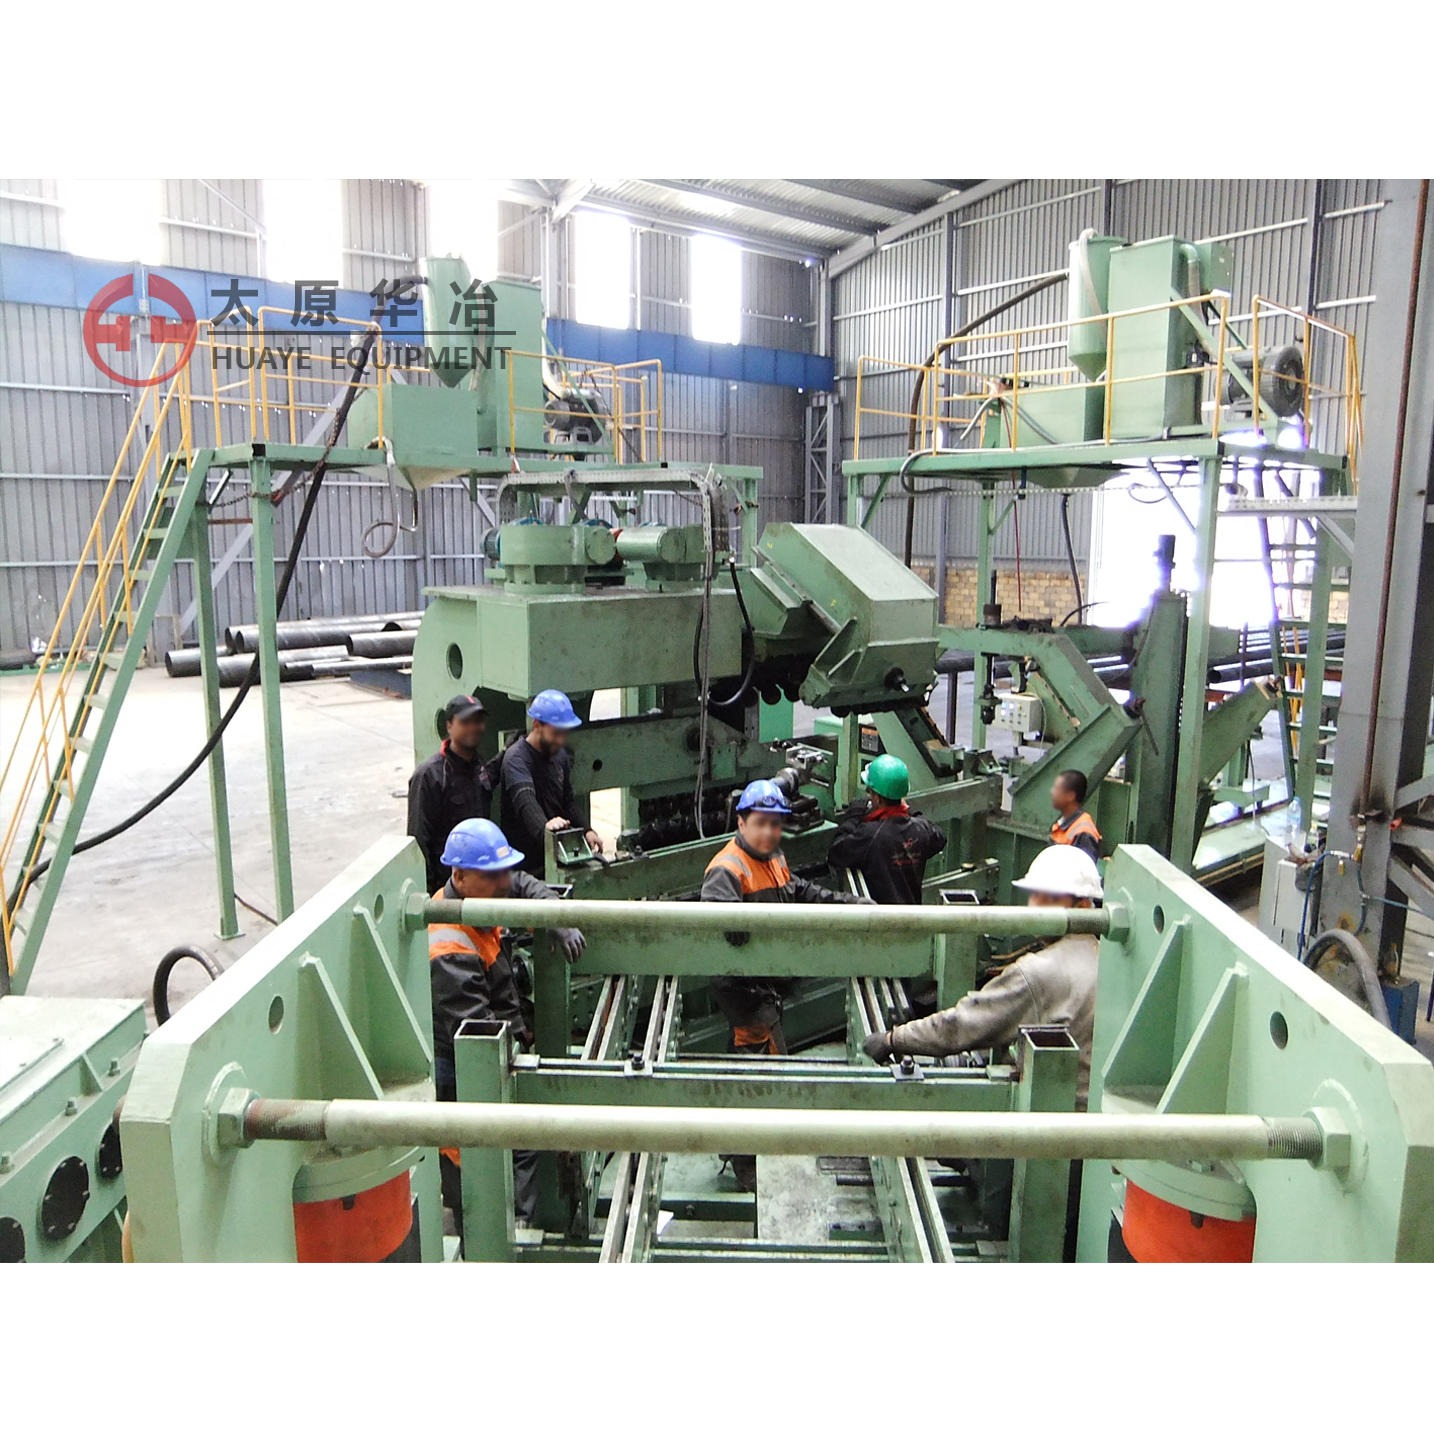 太原华冶 螺旋焊管机组设备 LH1250-820-14 专业生产设计螺旋焊管生产线图片